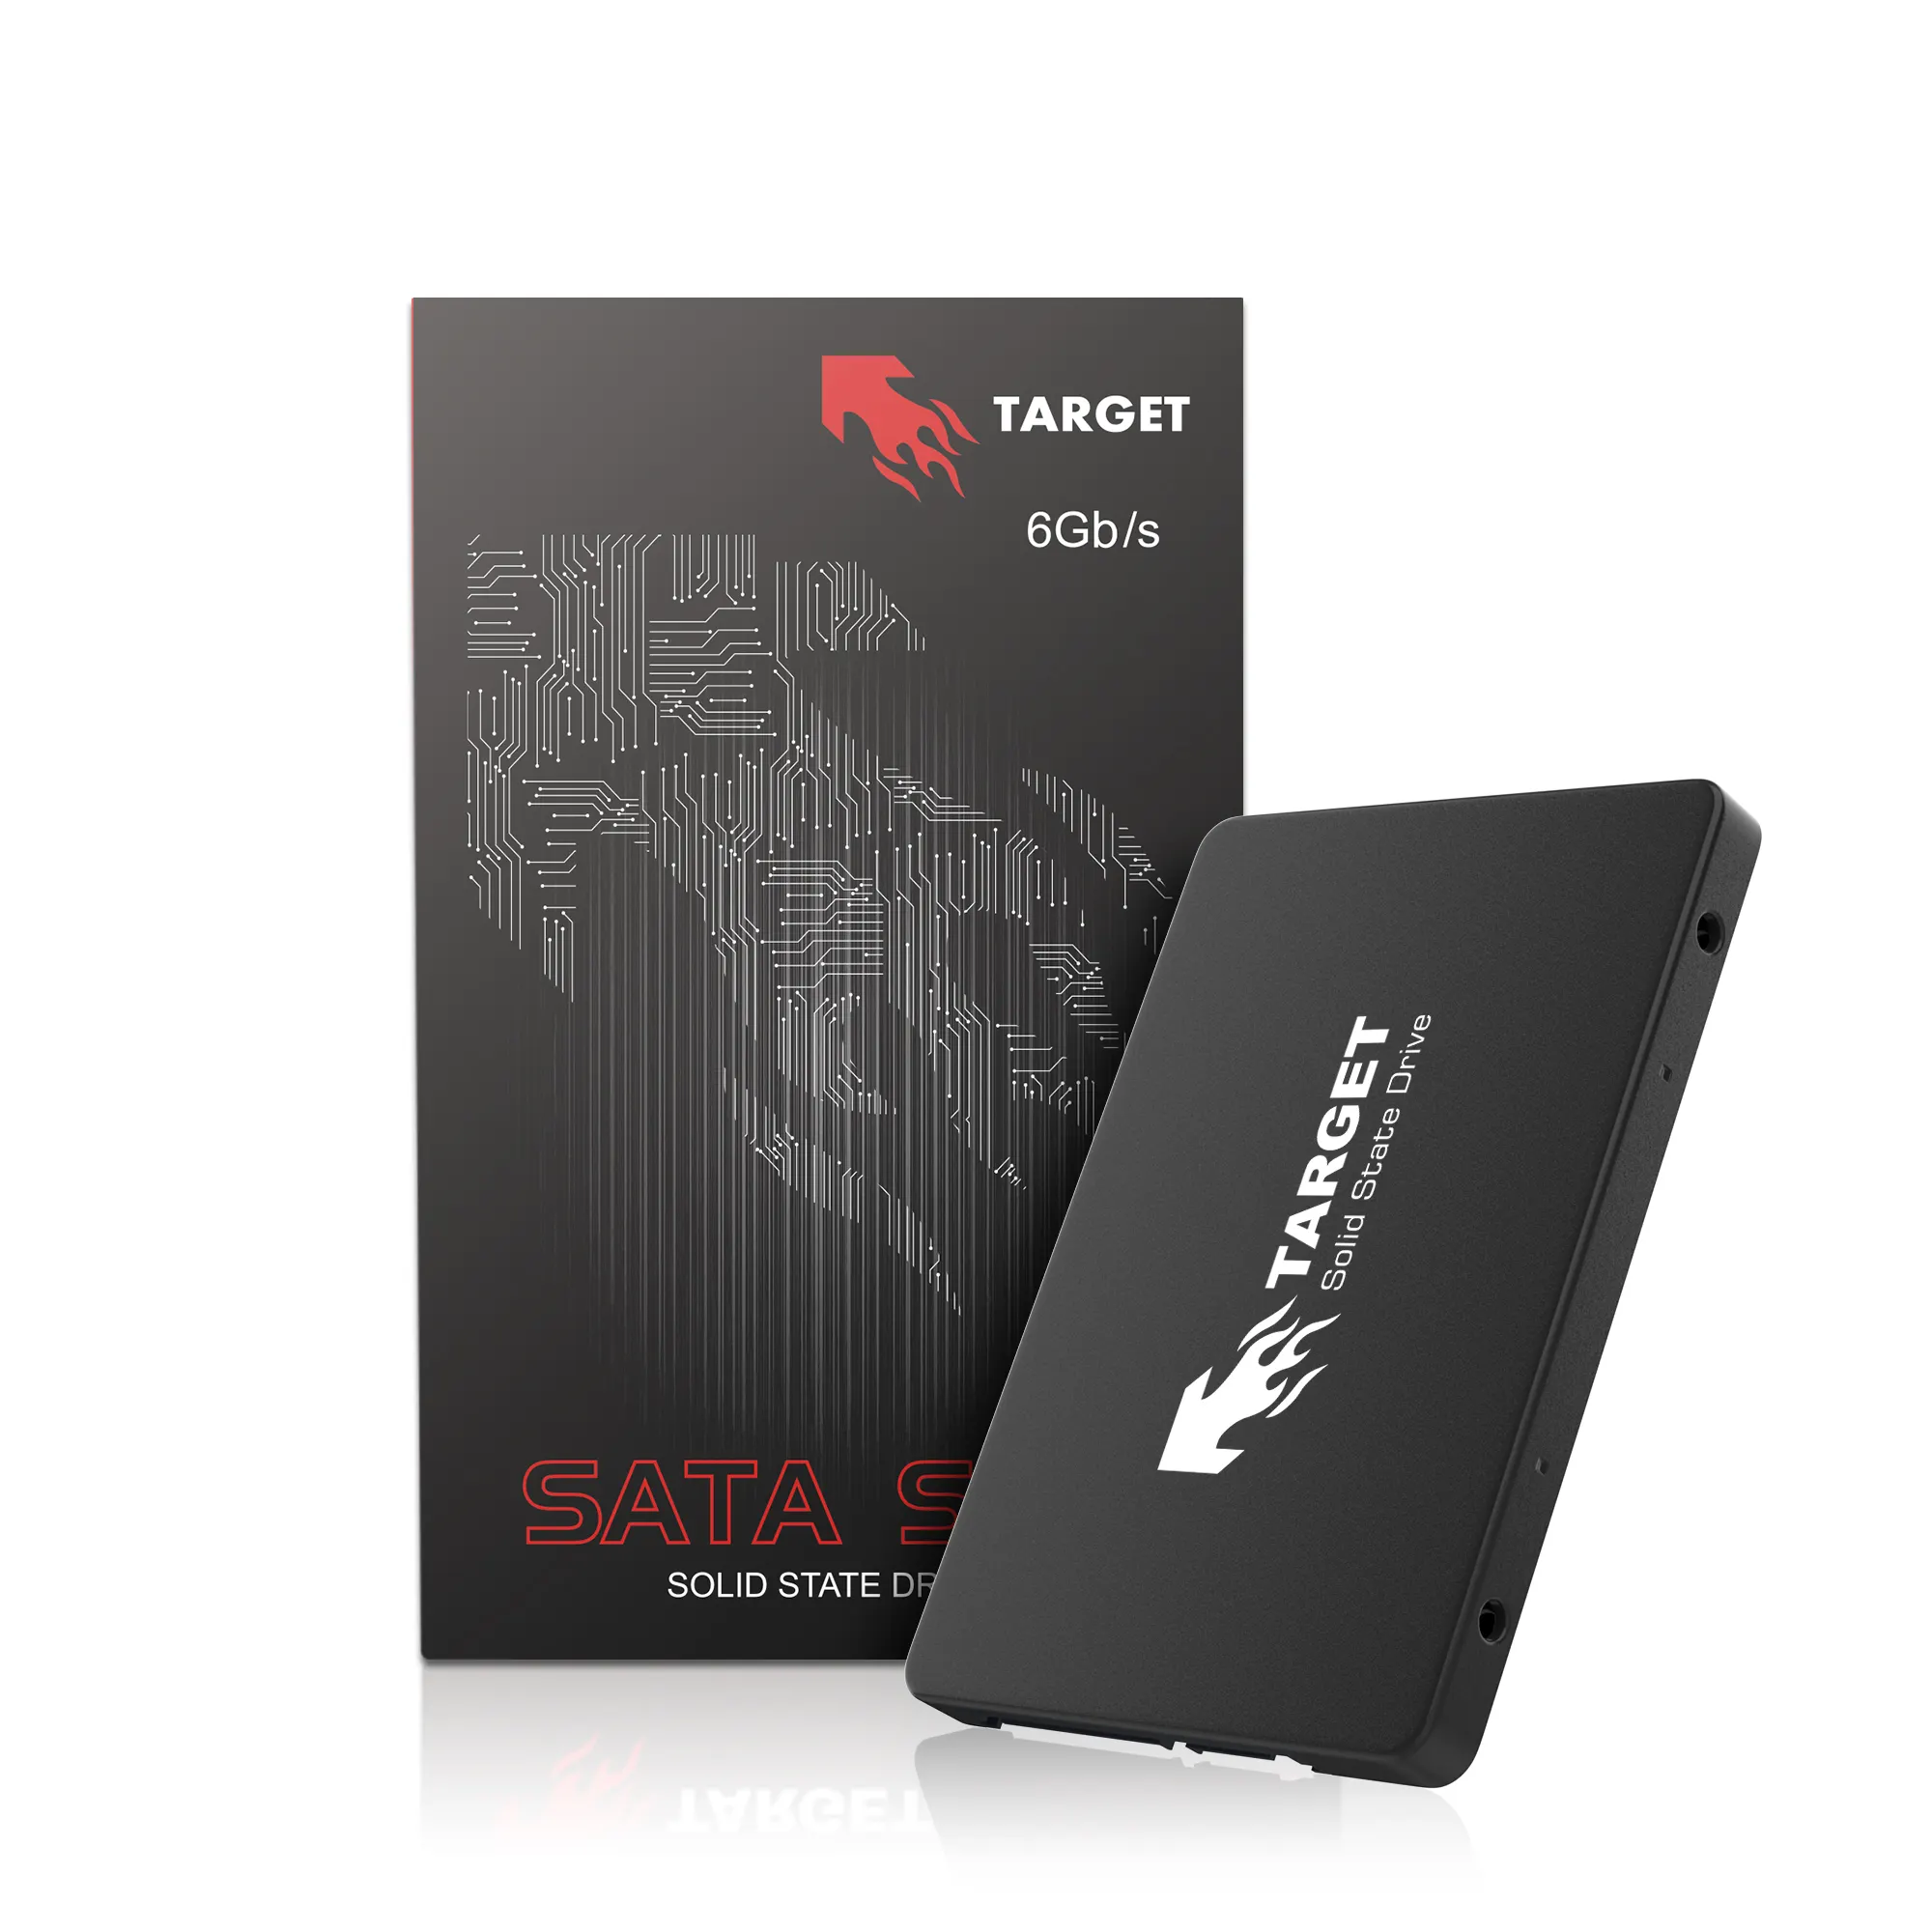 TARGET Sata3 Ssd 120gb 2,5 жесткий диск 2,5 "Внутренний твердотельный накопитель 120GB SSD